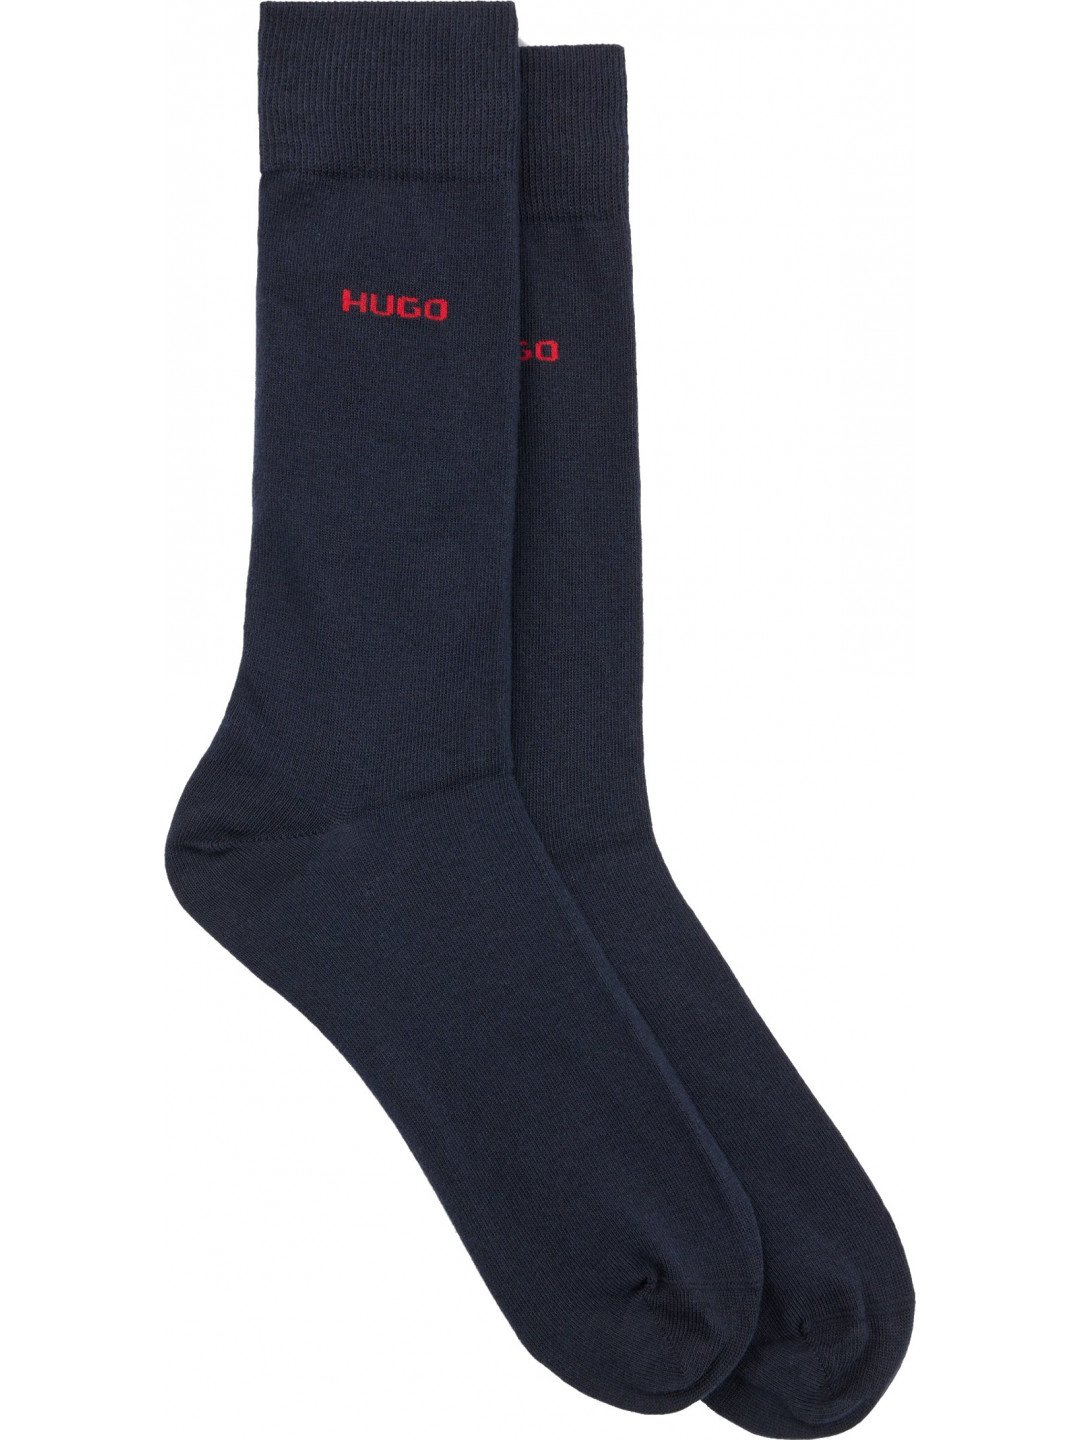 Hugo Boss 2 PACK – pánské ponožky HUGO 50468099-401 43-46